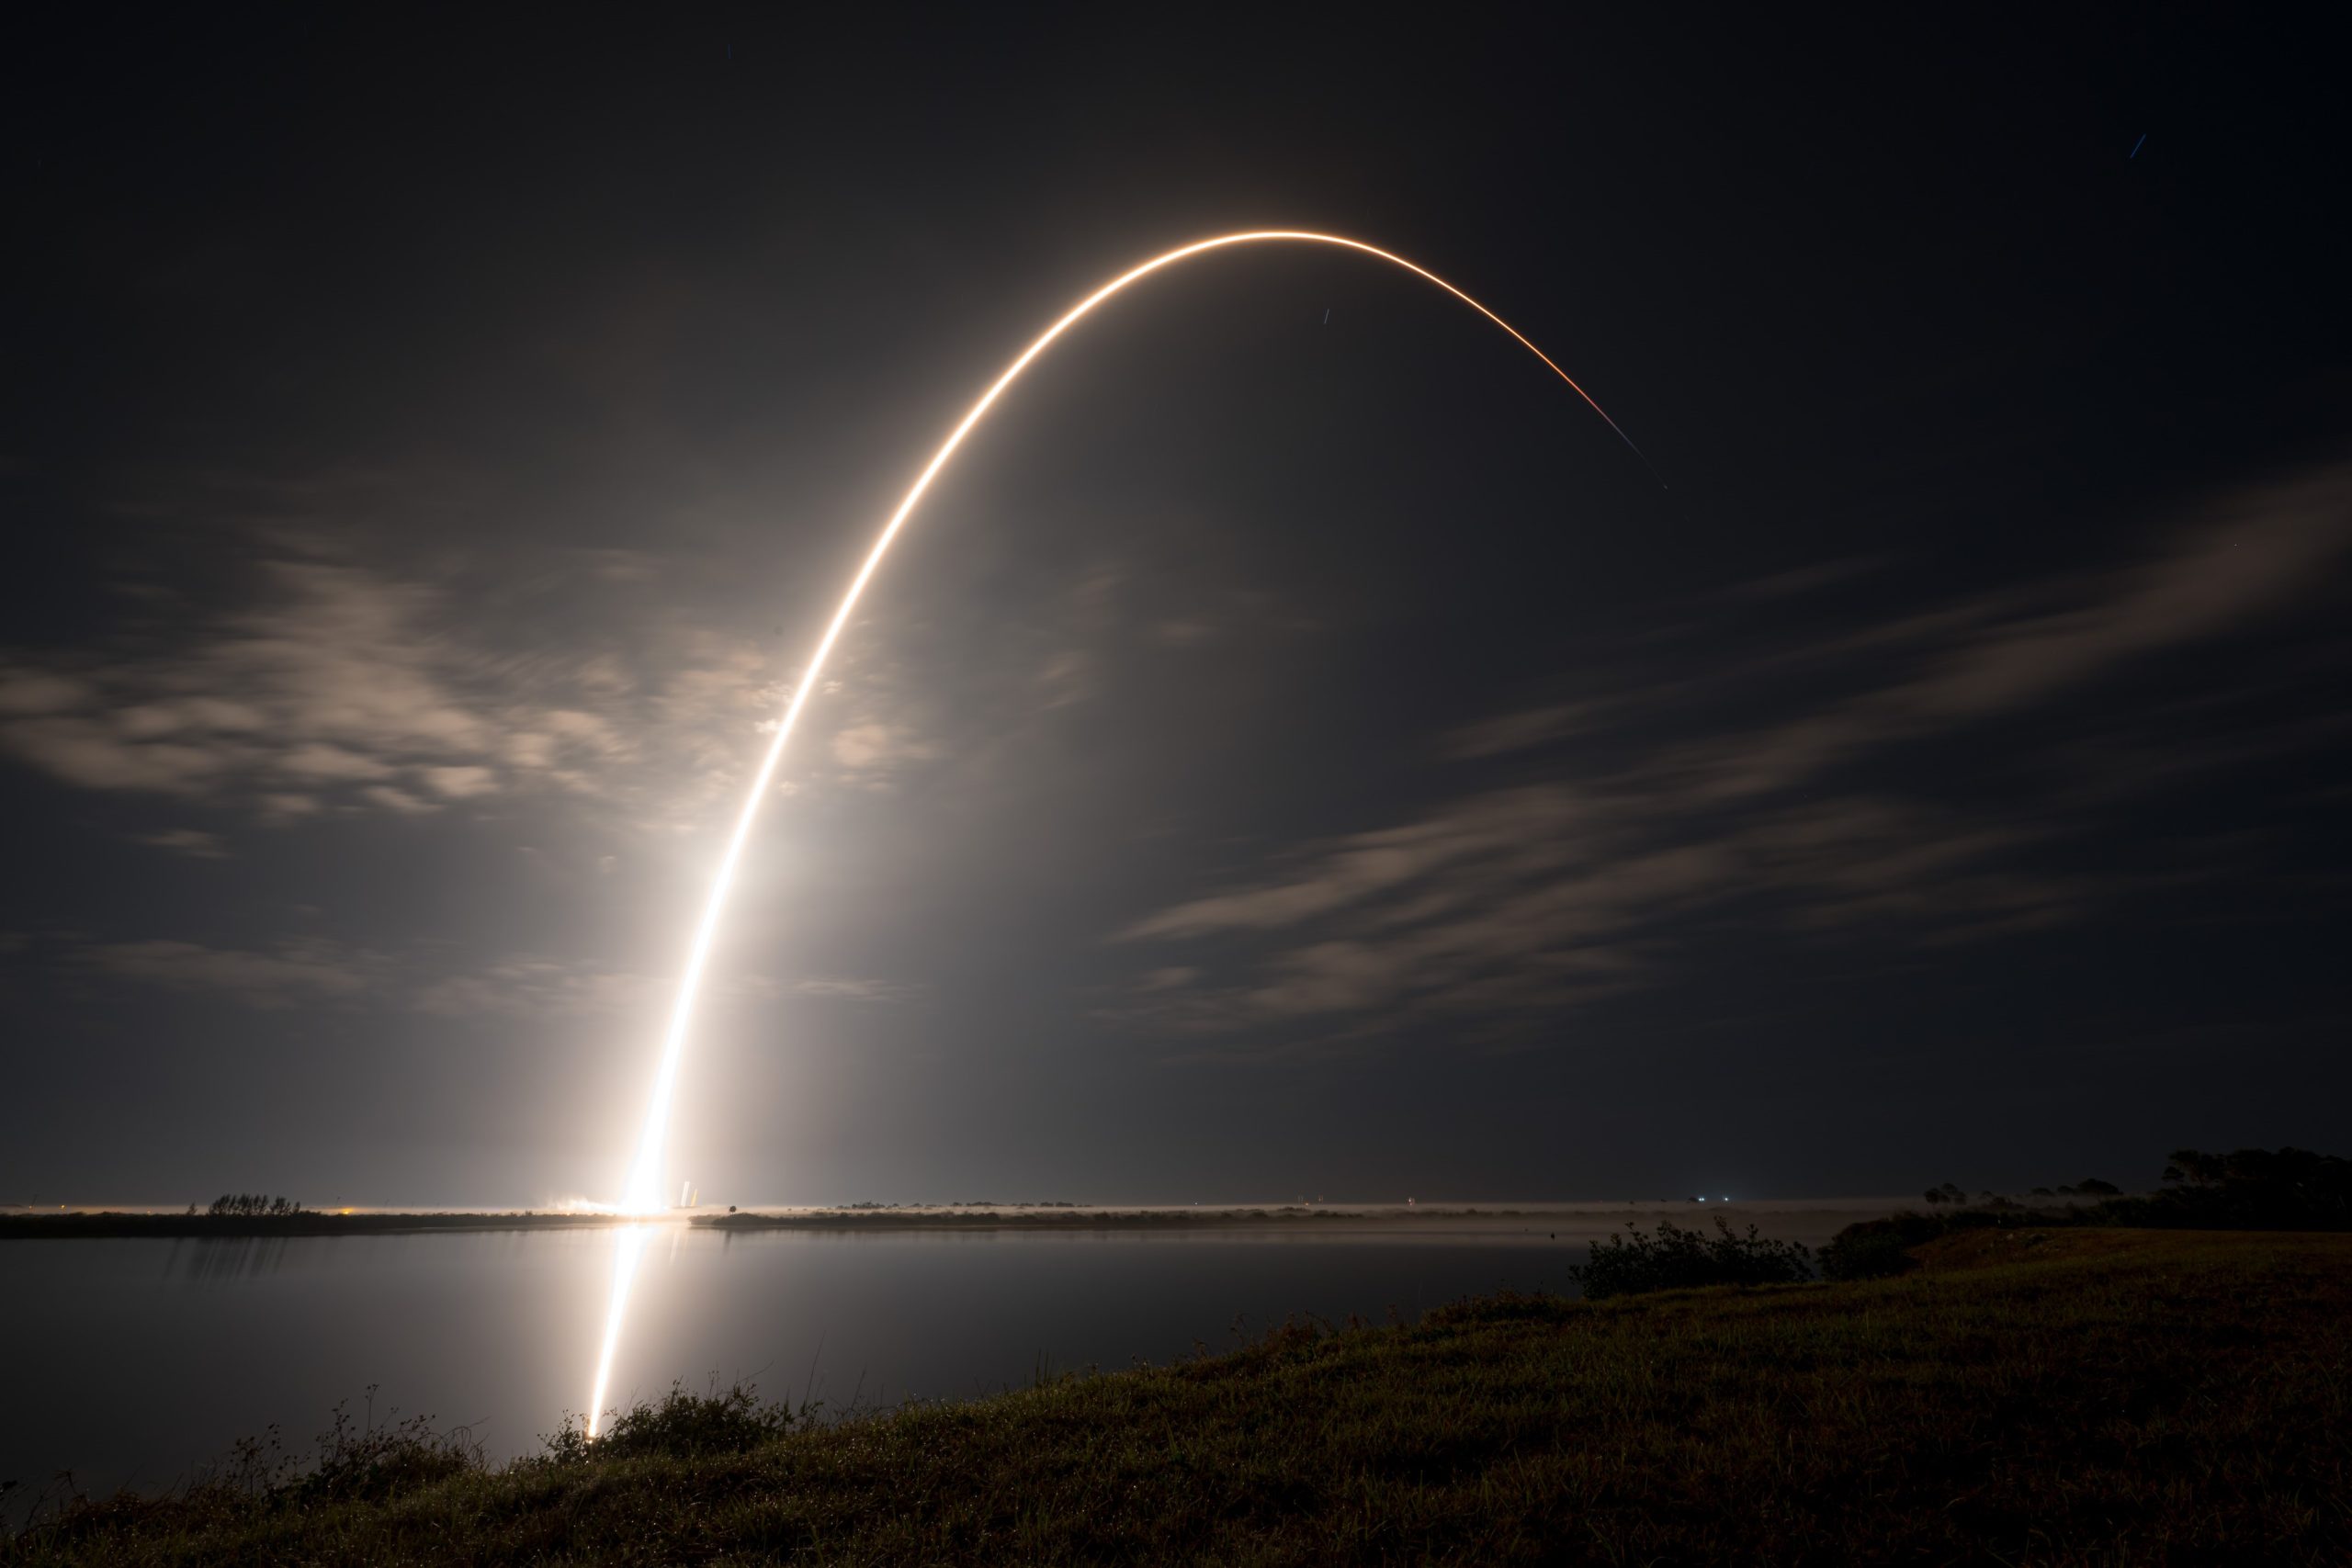 Zdjęcie: SpaceX